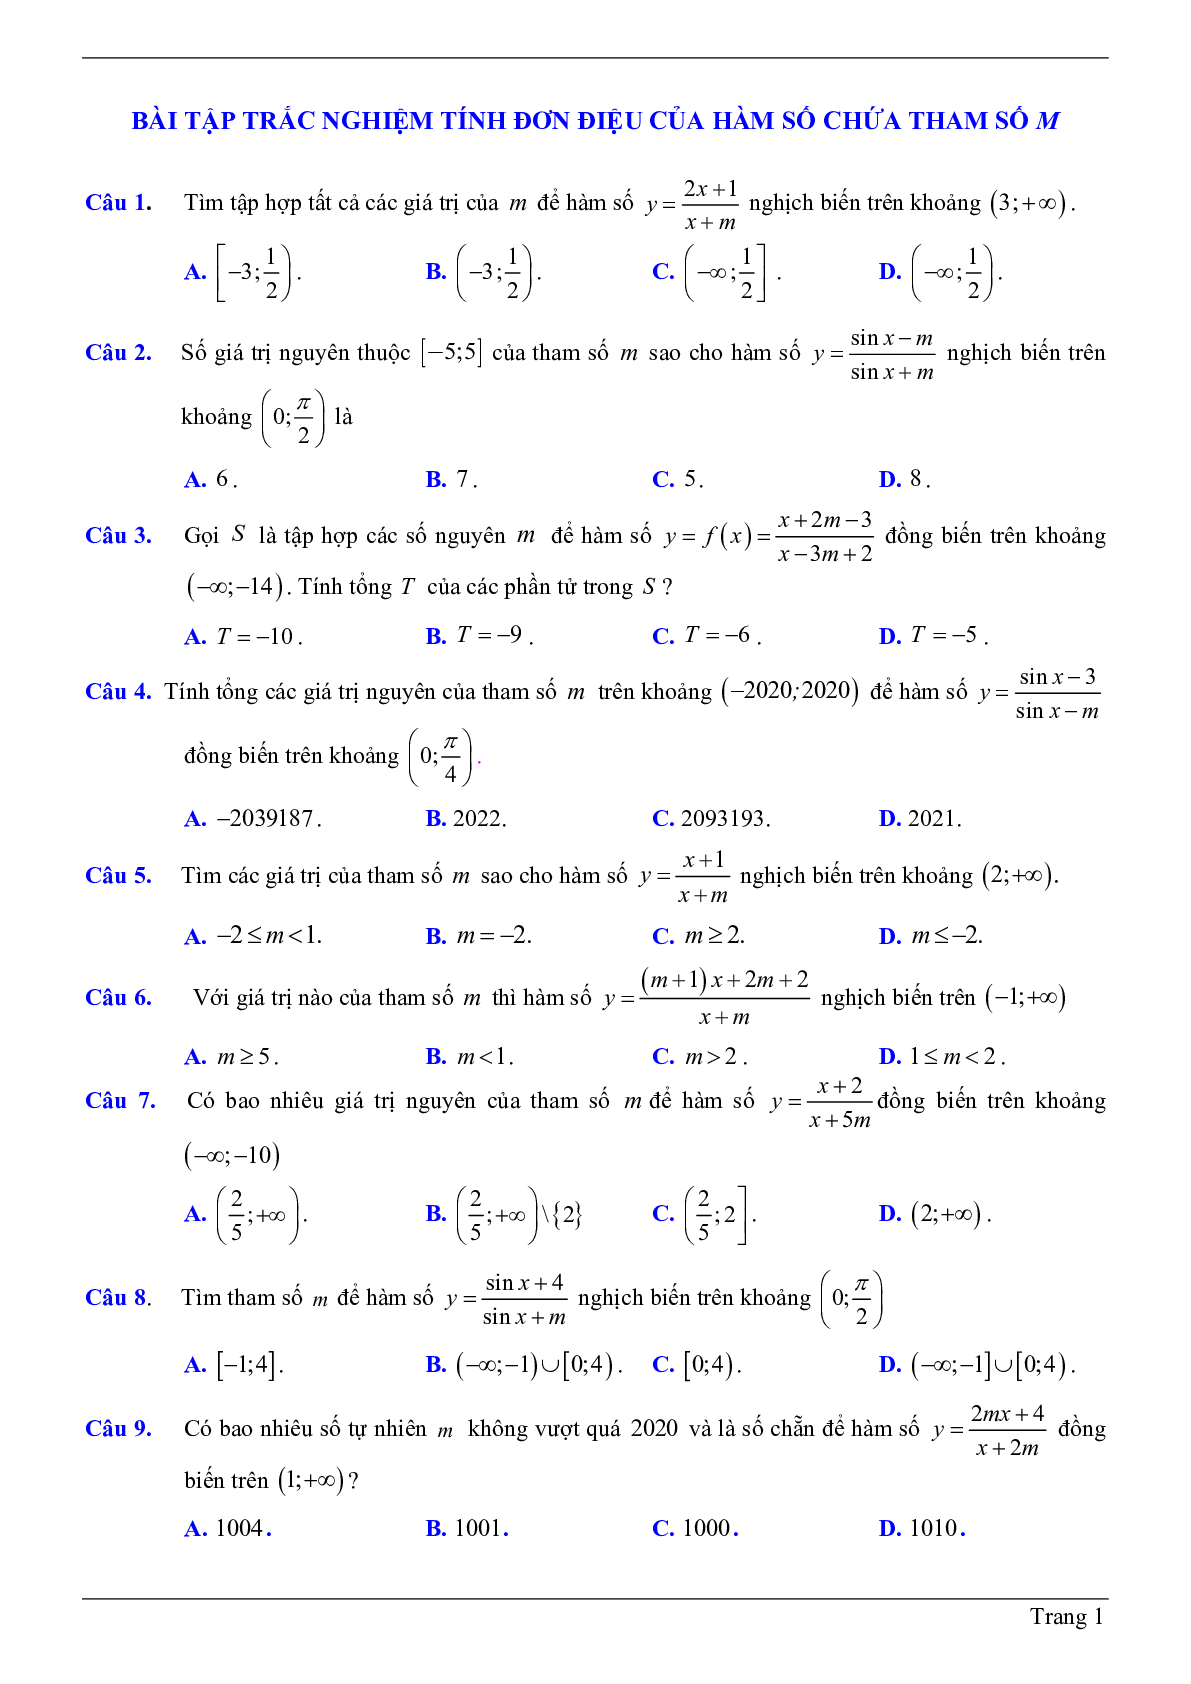 50 Bài tập trắc nghiệm về tính đơn điệu của hàm số chứa tham số m có đáp án 2023 (trang 1)